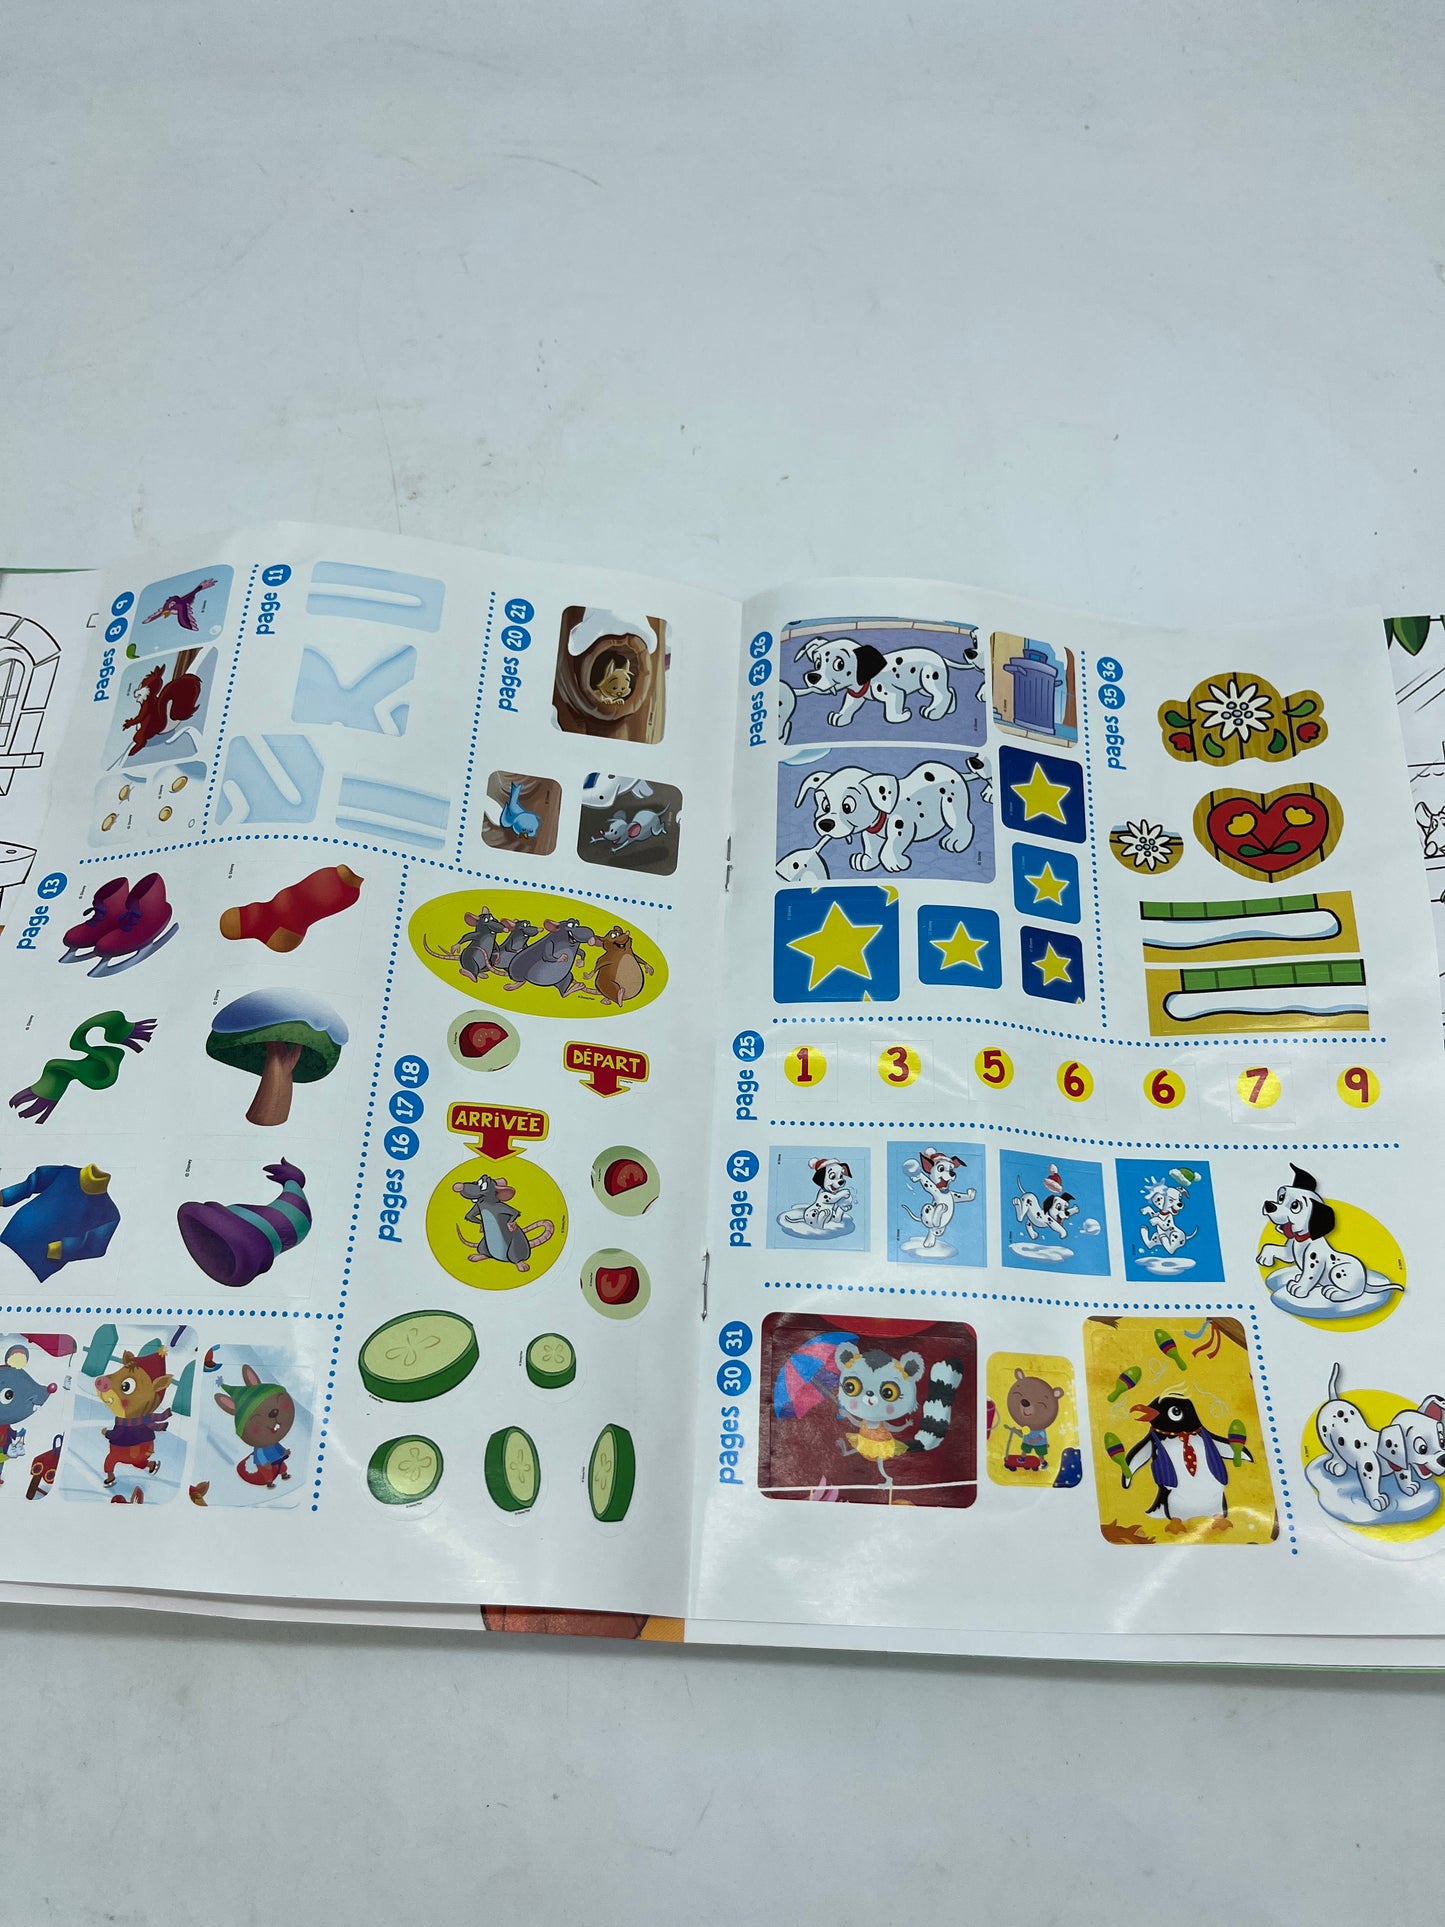 Livre d’activité Magazine disney Mickey junior jeux  hors série avec ses crayons de couleurs  Neuf